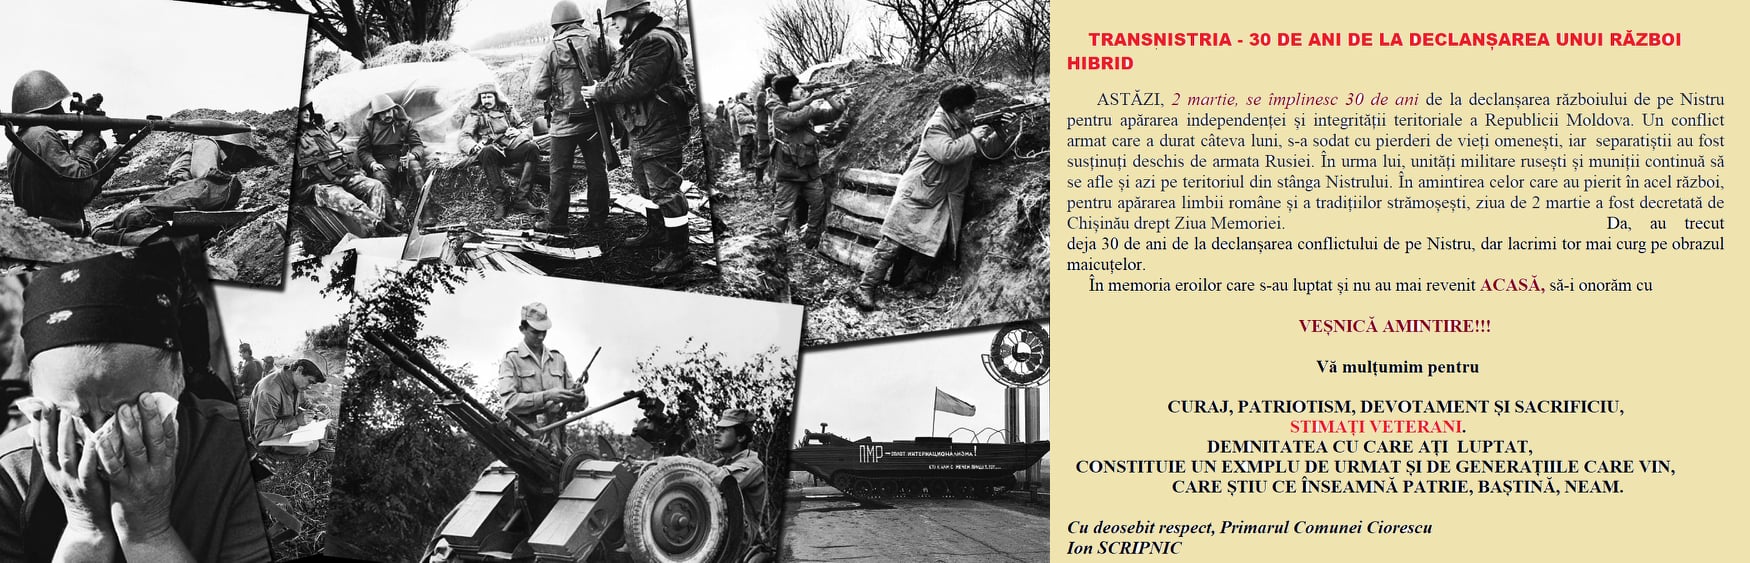 Transnistria - 30 de ani de la declanșarea unui război hibrid